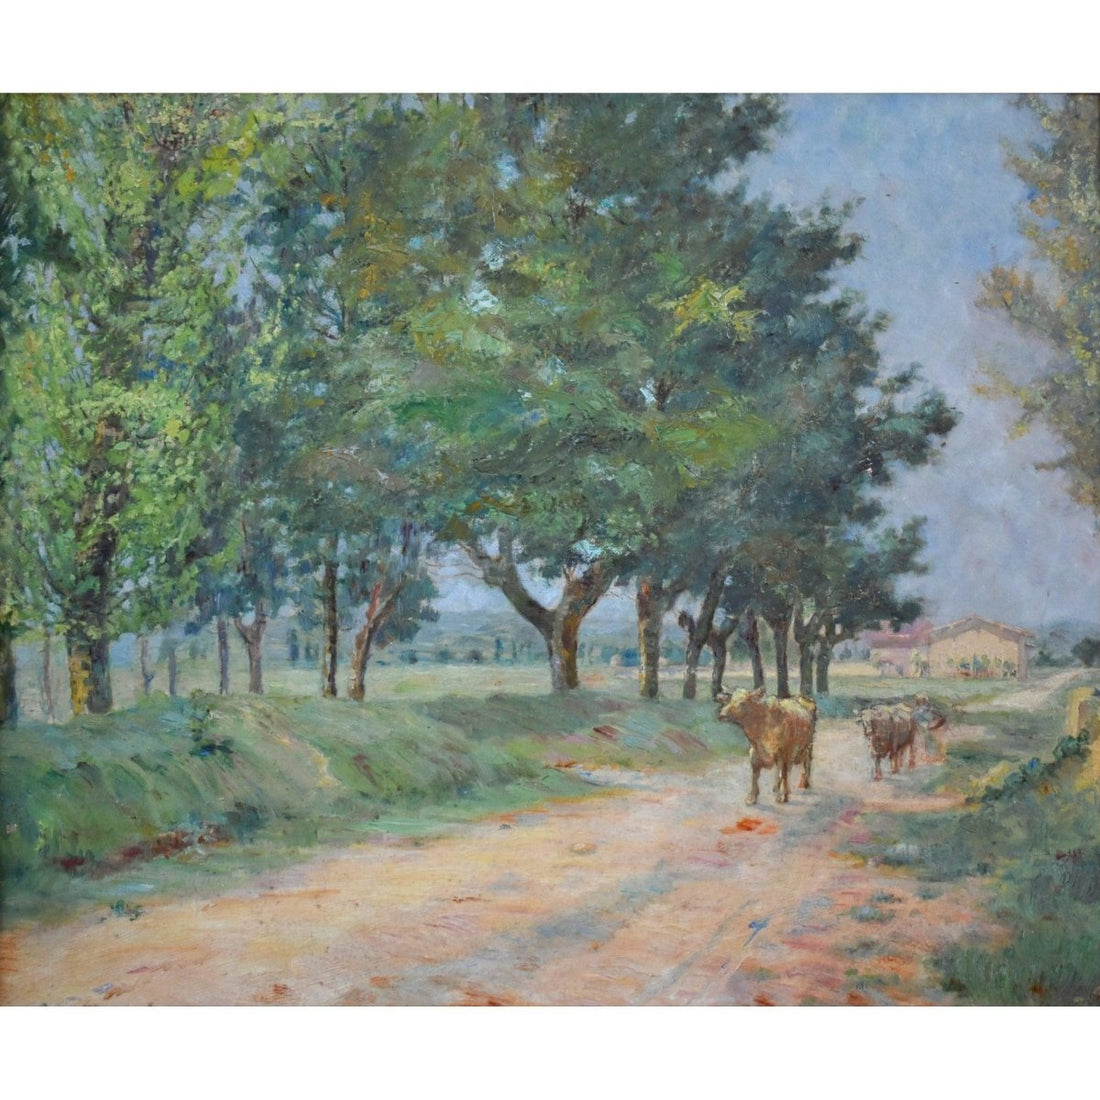 Jean Galland – Landscape with Cows - Winckelmann Gallery